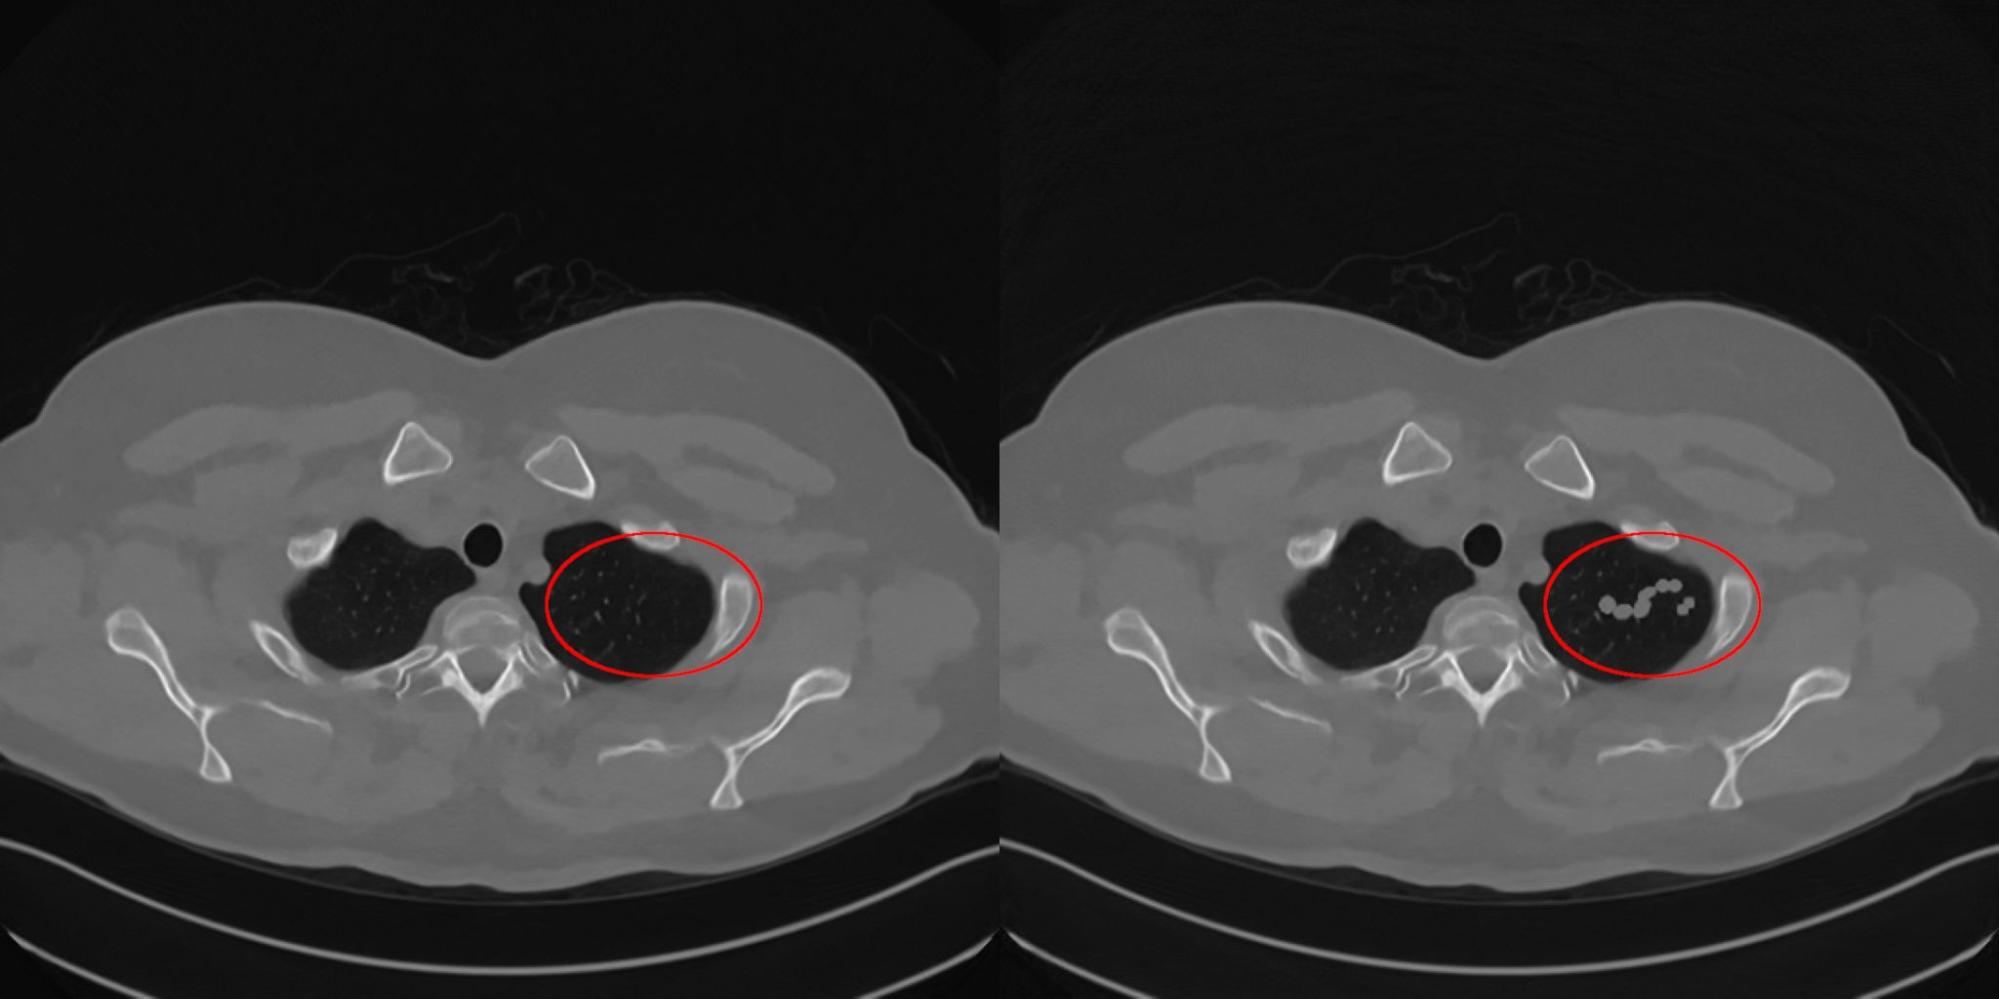 Рис. 12. Изображения с реконструкцией здорового пациент алгоритмом LPDR без искажений (левое изображение) и с подобранным искажением (правое) на исходные данные